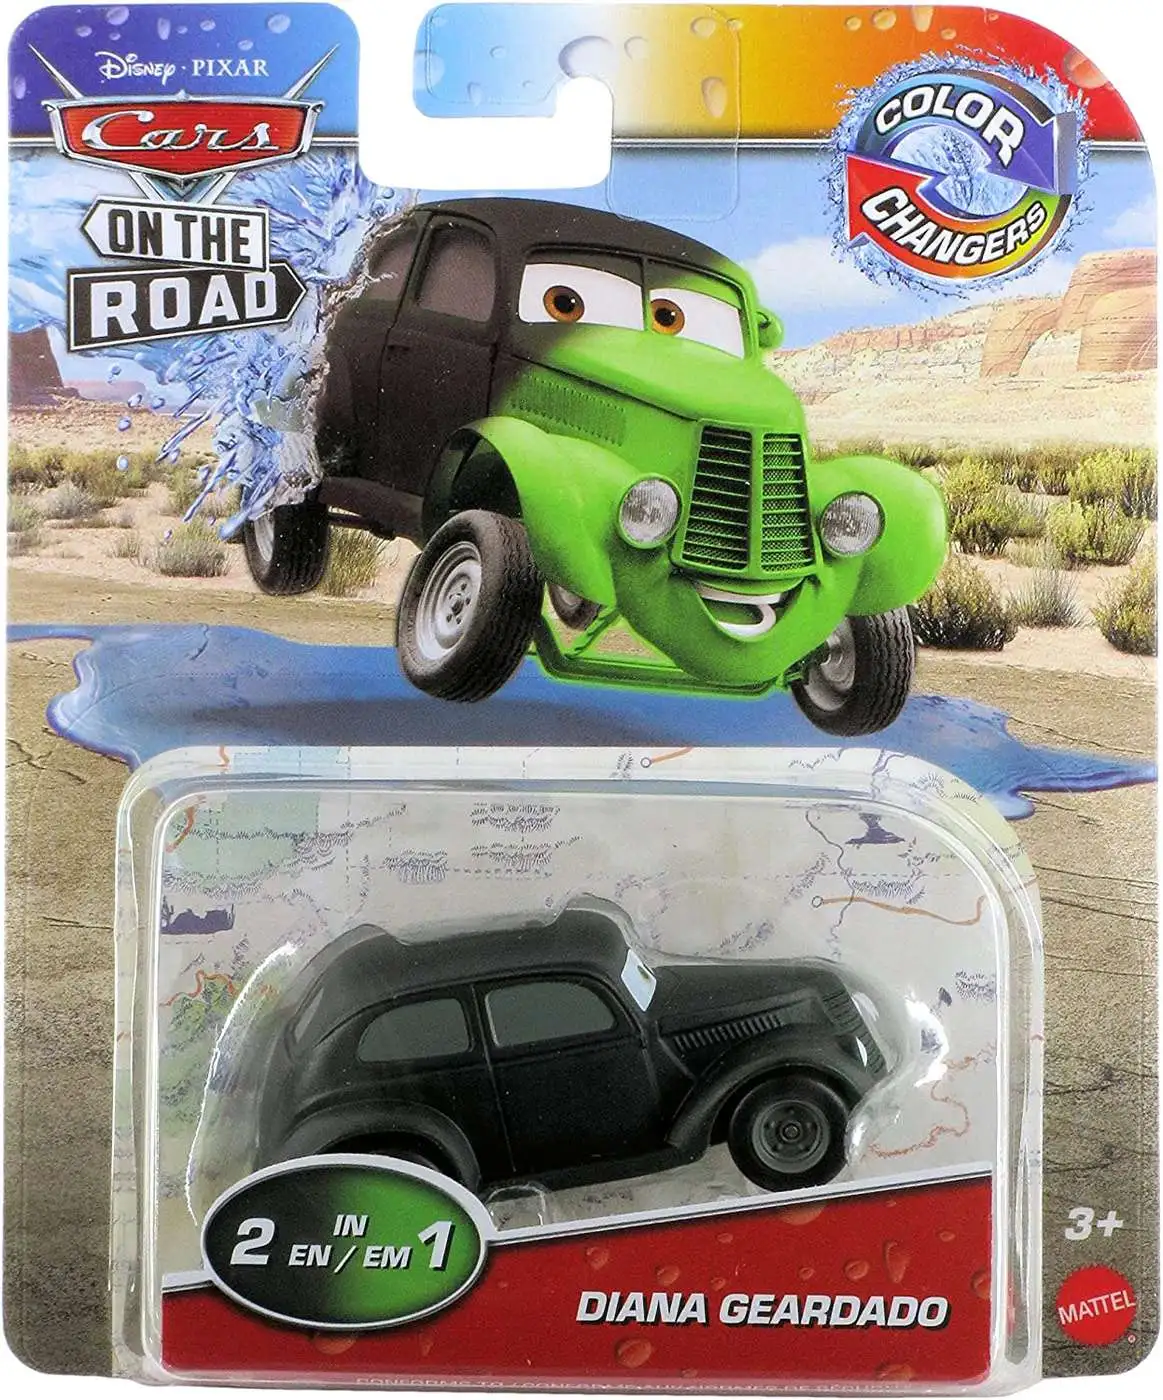 Pixar Cars Color Changers - Diana Geardado Diana Geardado - Leiker